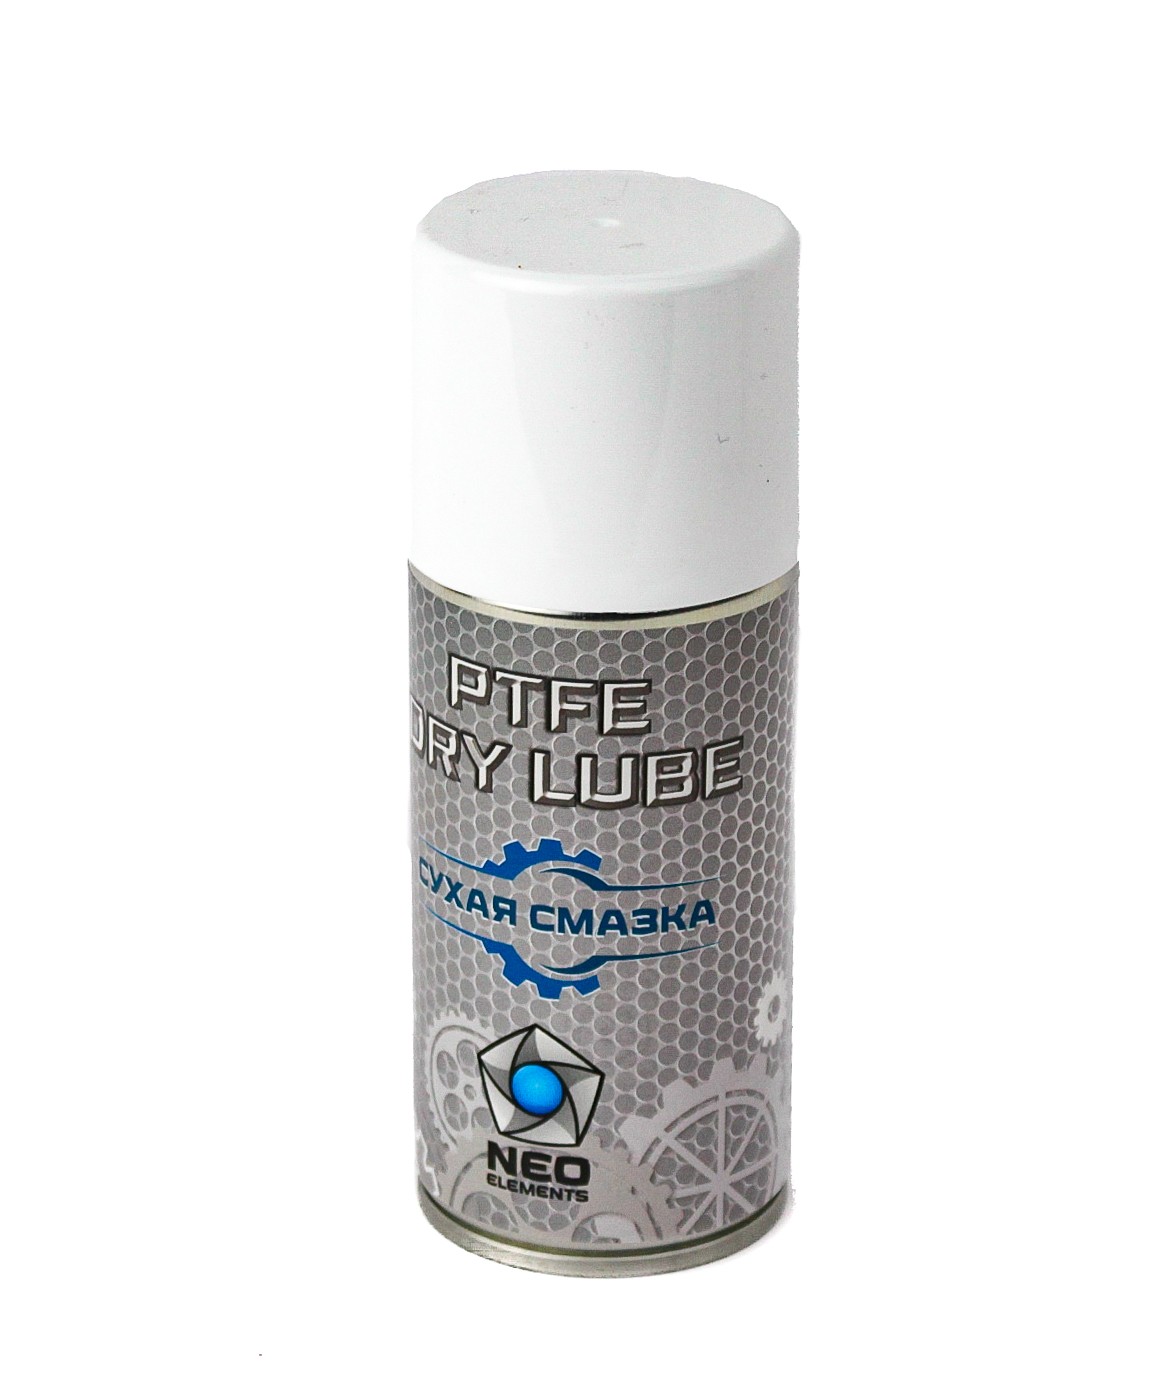 Смазка Neo Еlements PTFE Dry lube сухая 210мл